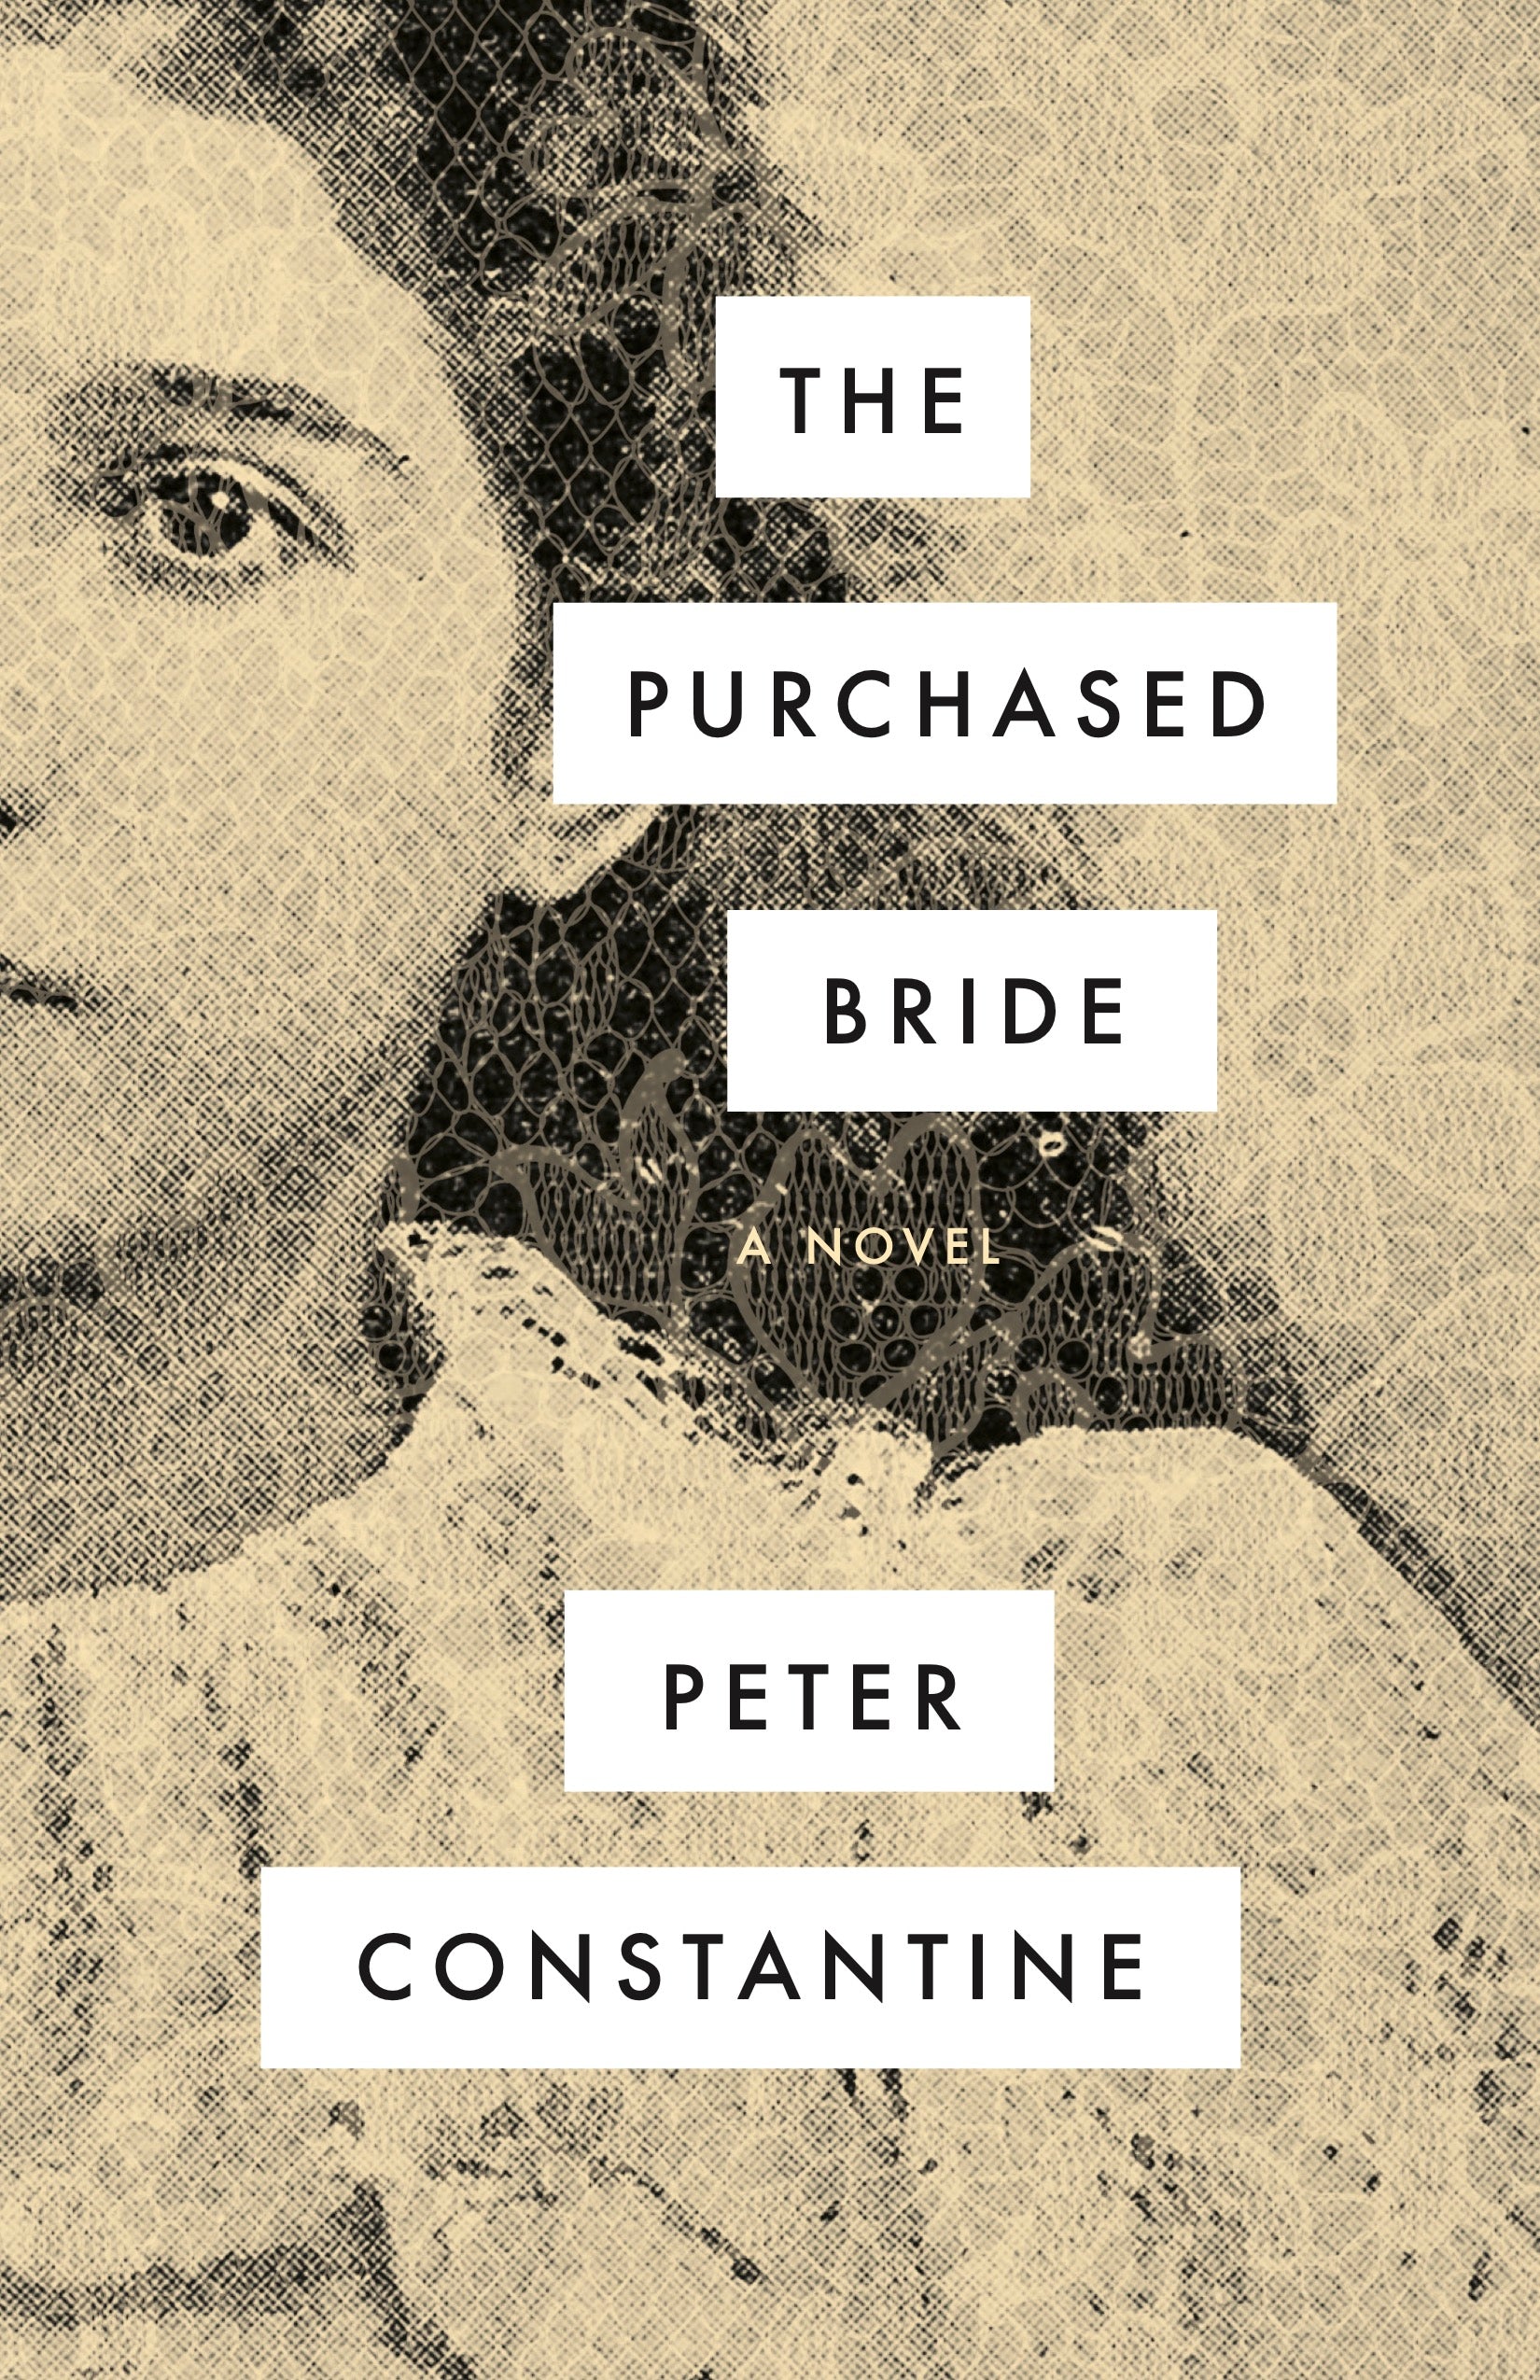 The Bride - The Book Cover Designer